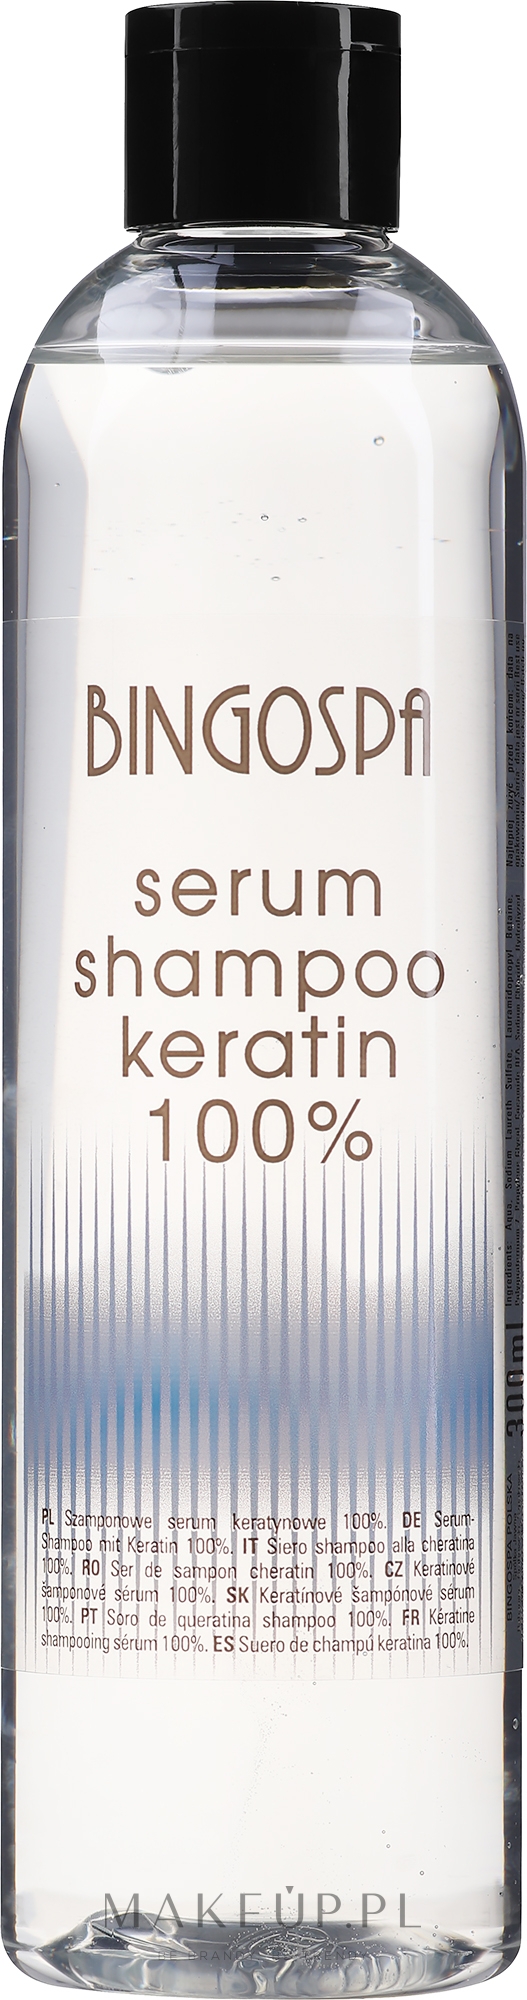 bingo spa szampon z olejem arganowym opinie